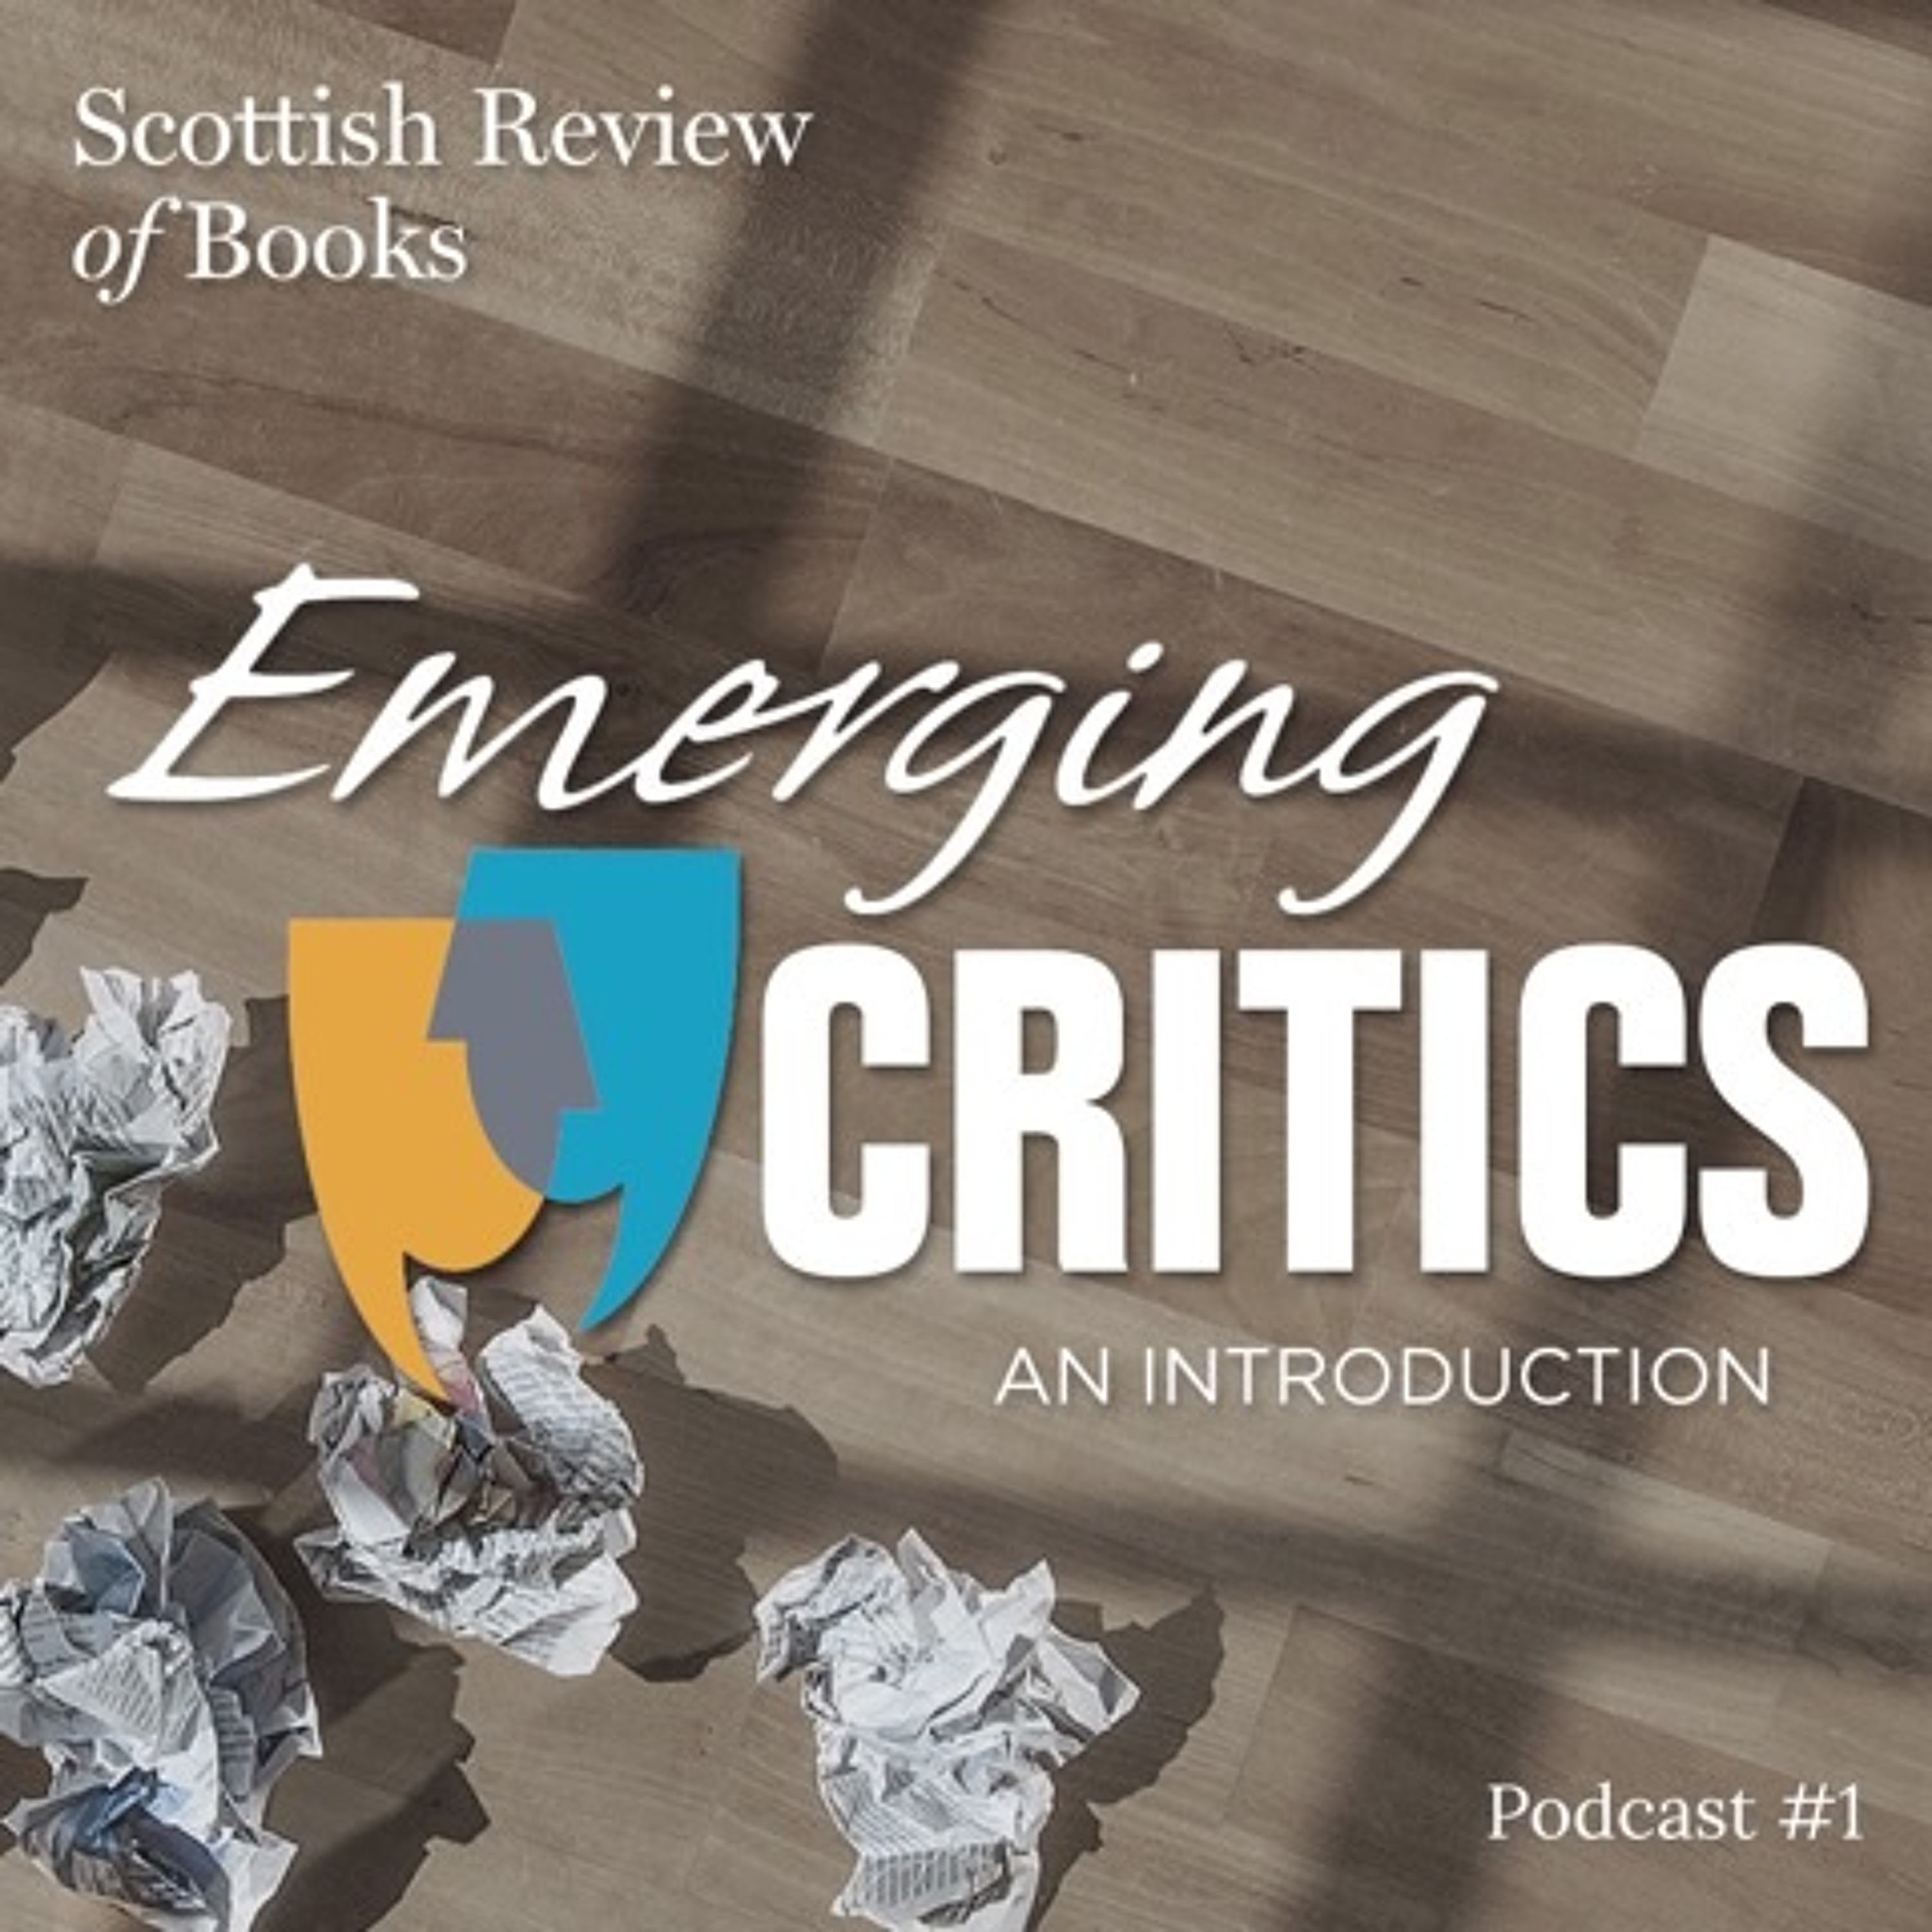 Episode 1 – Emerging Critics, part 1 – An Introduction